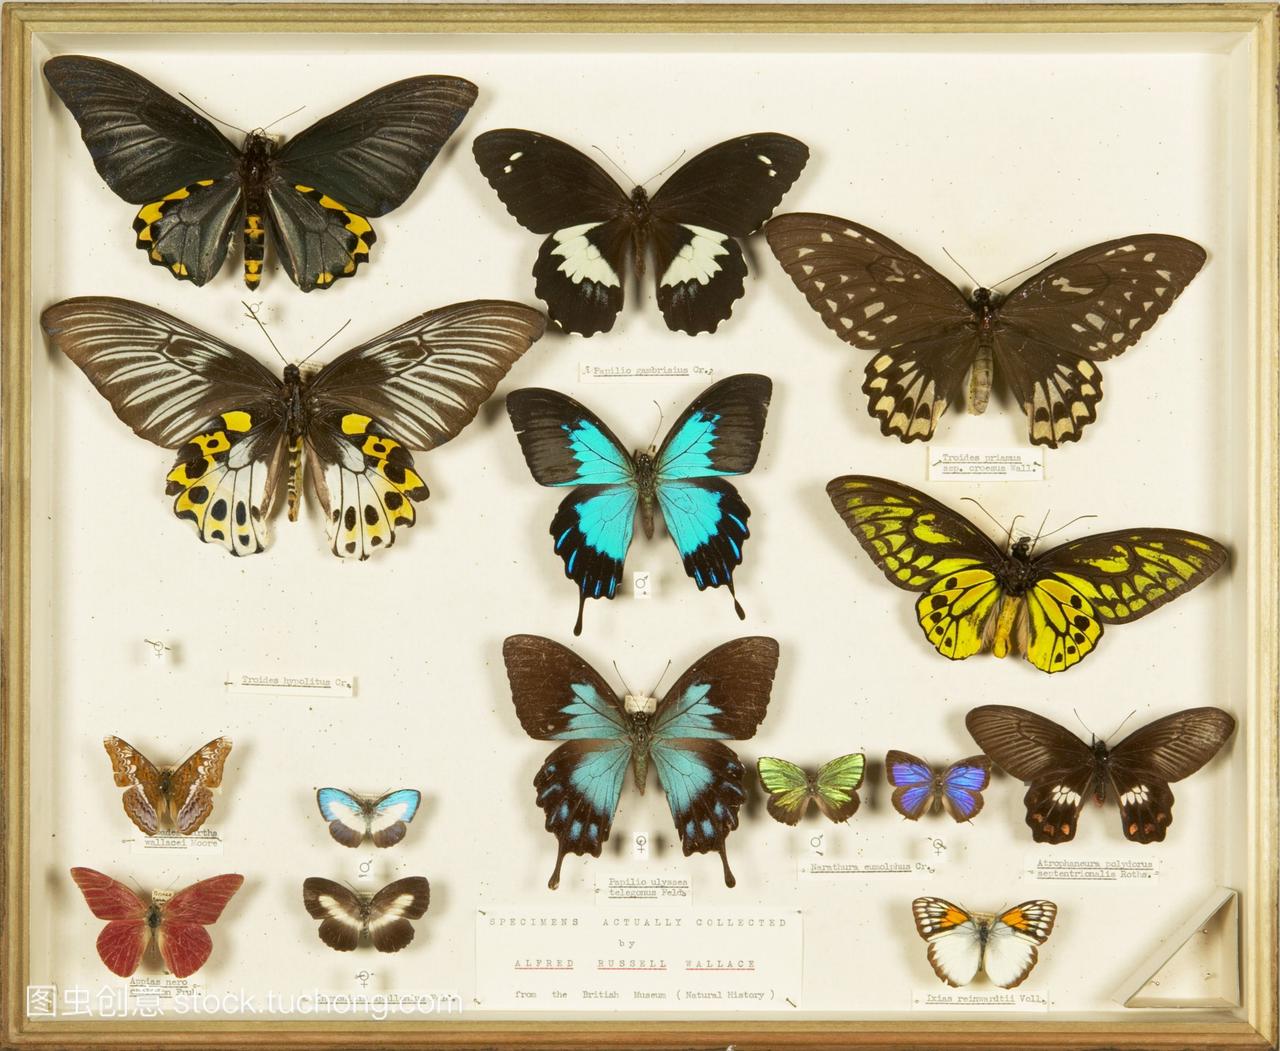 华莱士收集蝴蝶标本。由英国博物学家阿尔弗雷